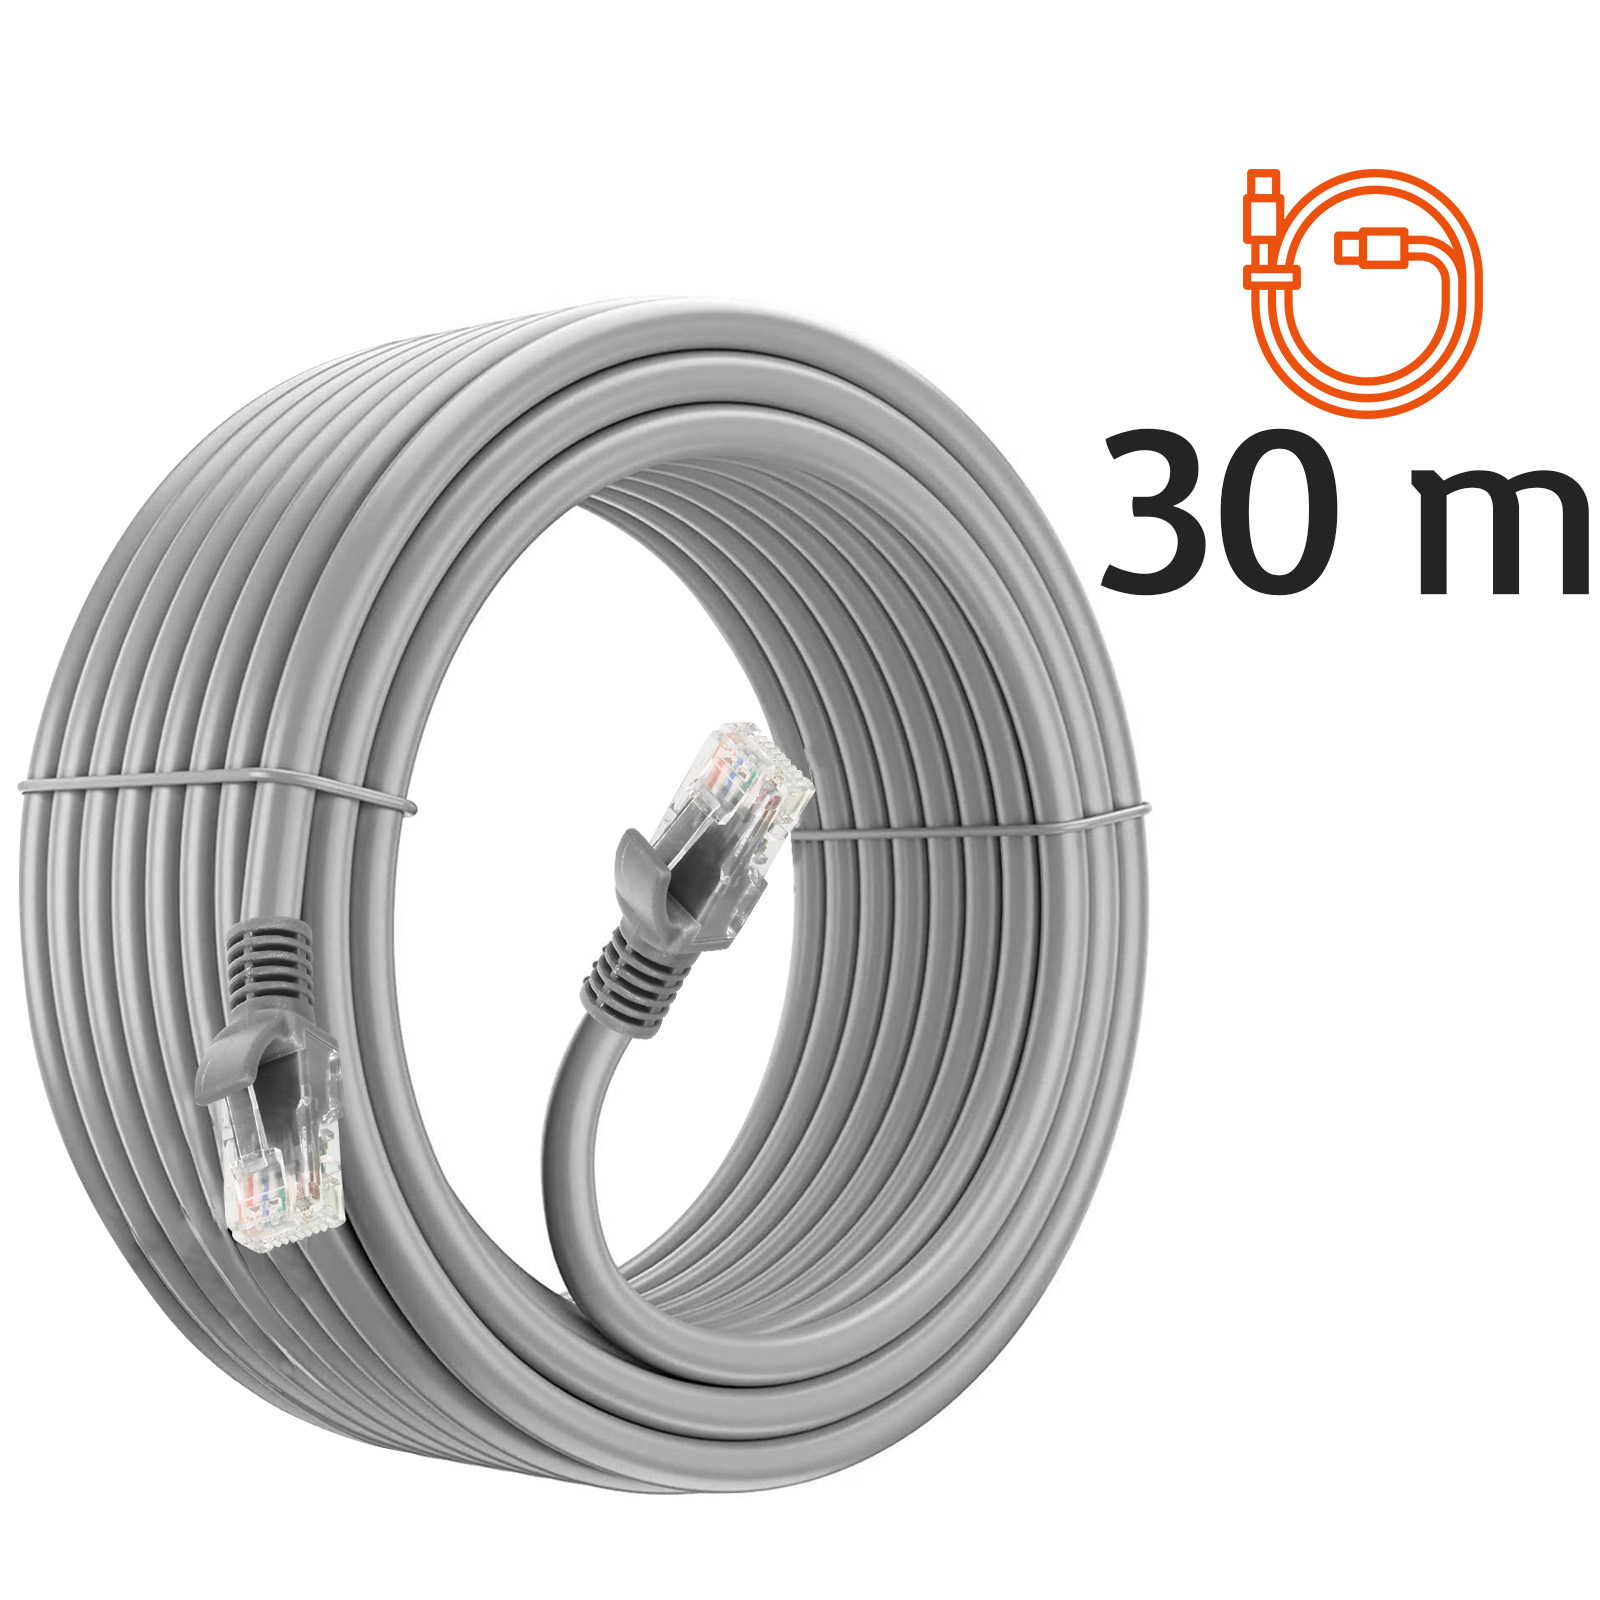 Câble Ethernet 30m, RJ45 Catégorie 6 Transfert 10Gbps - 250MHz, LinQ - Gris  - Français